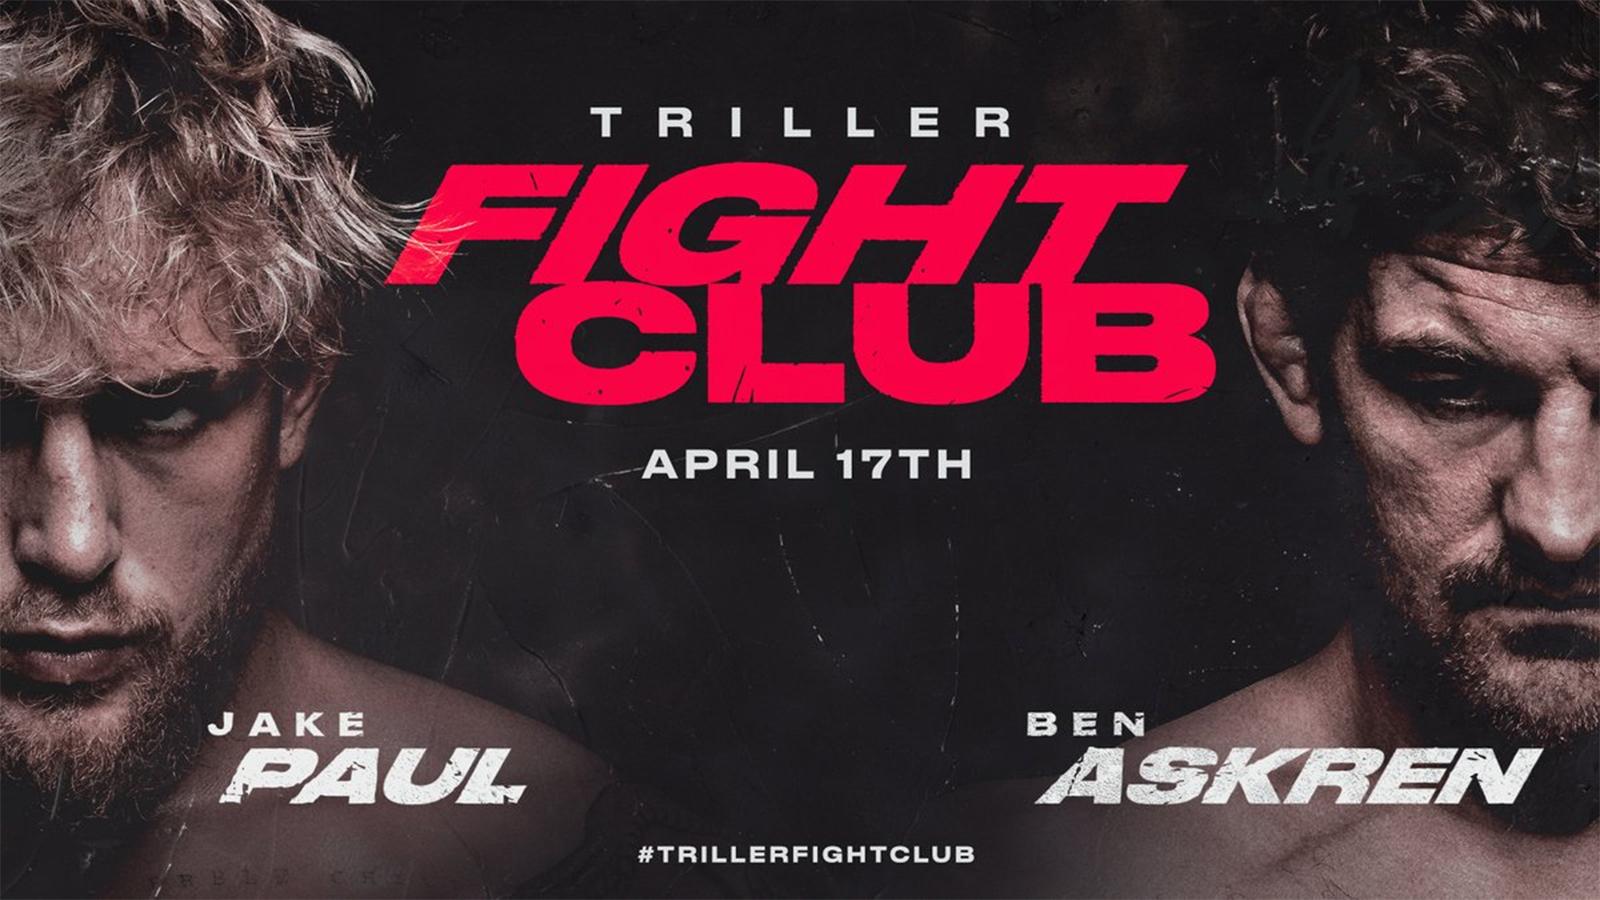 Jake Paul vs Ben Askren fight promo poster